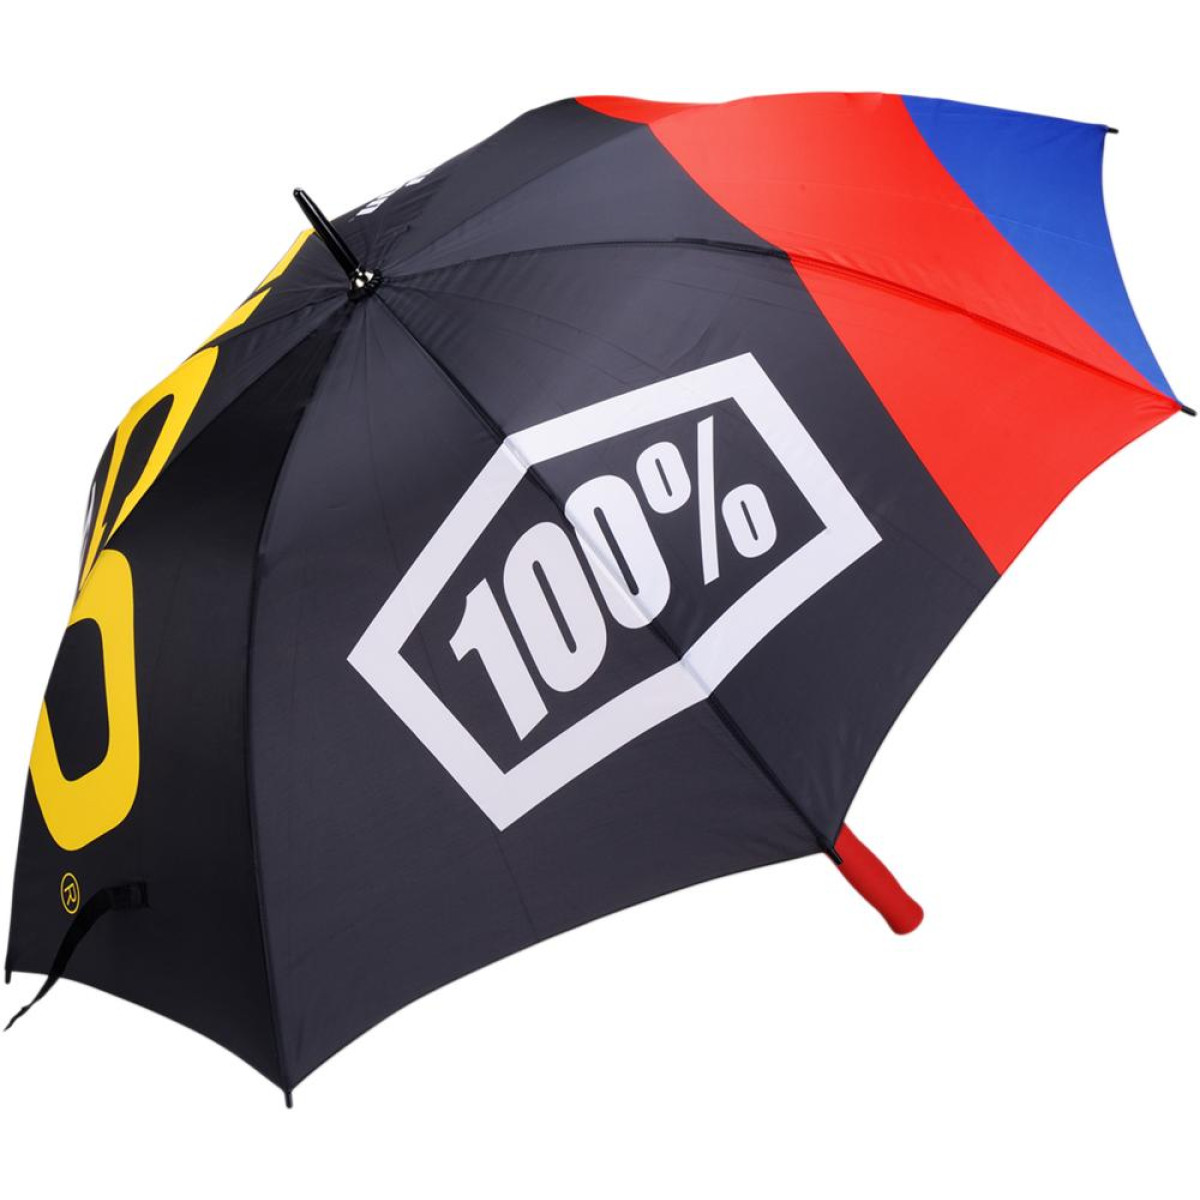 100% Umbrella Geico Honda Black/Red